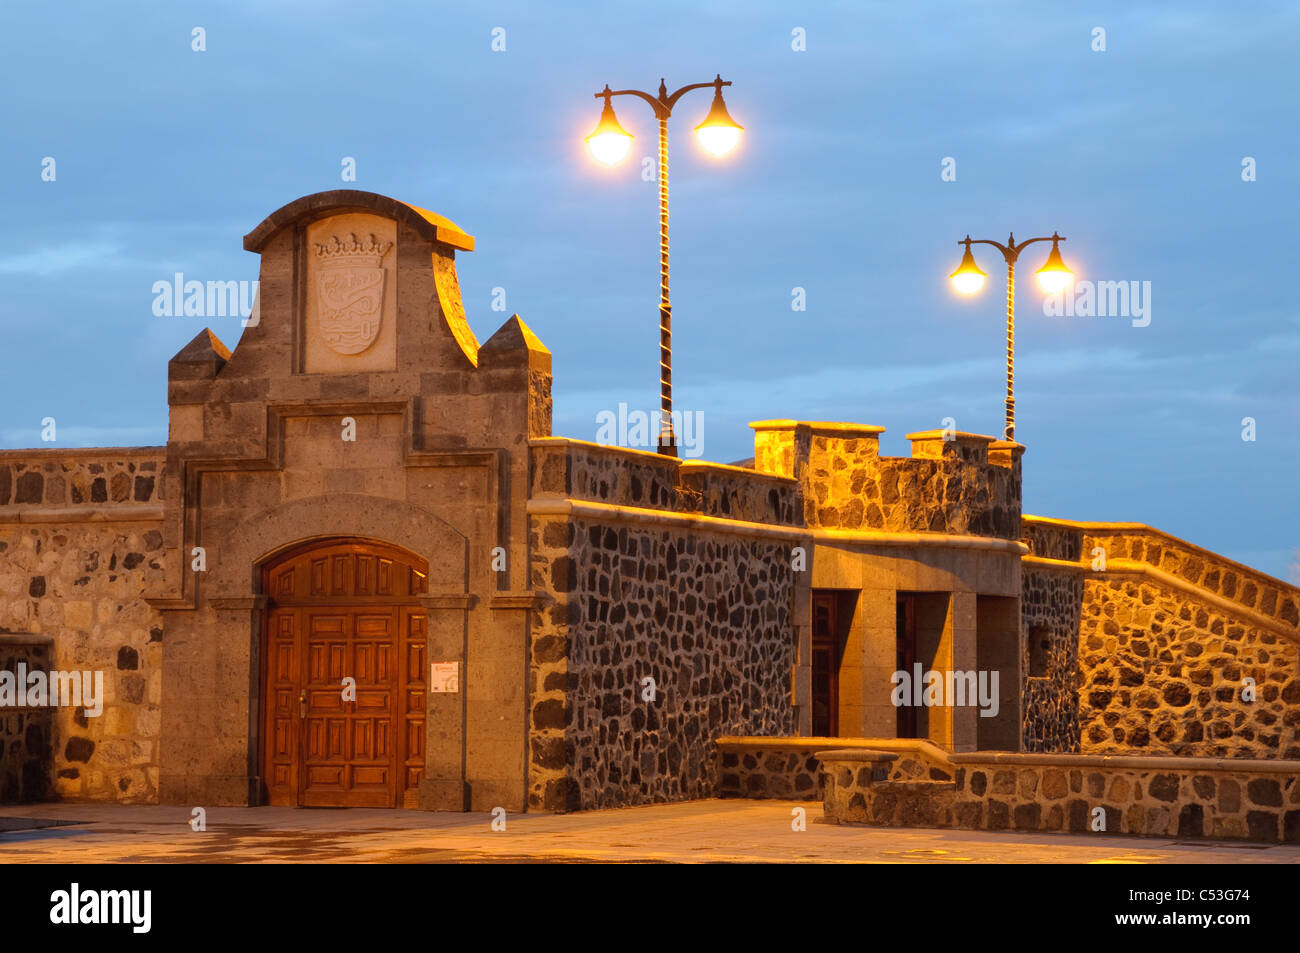 Mur fortifié de la Plaza Europa, Puerto de la Cruz, Tenerife, Canaries, Espagne, Europe Banque D'Images